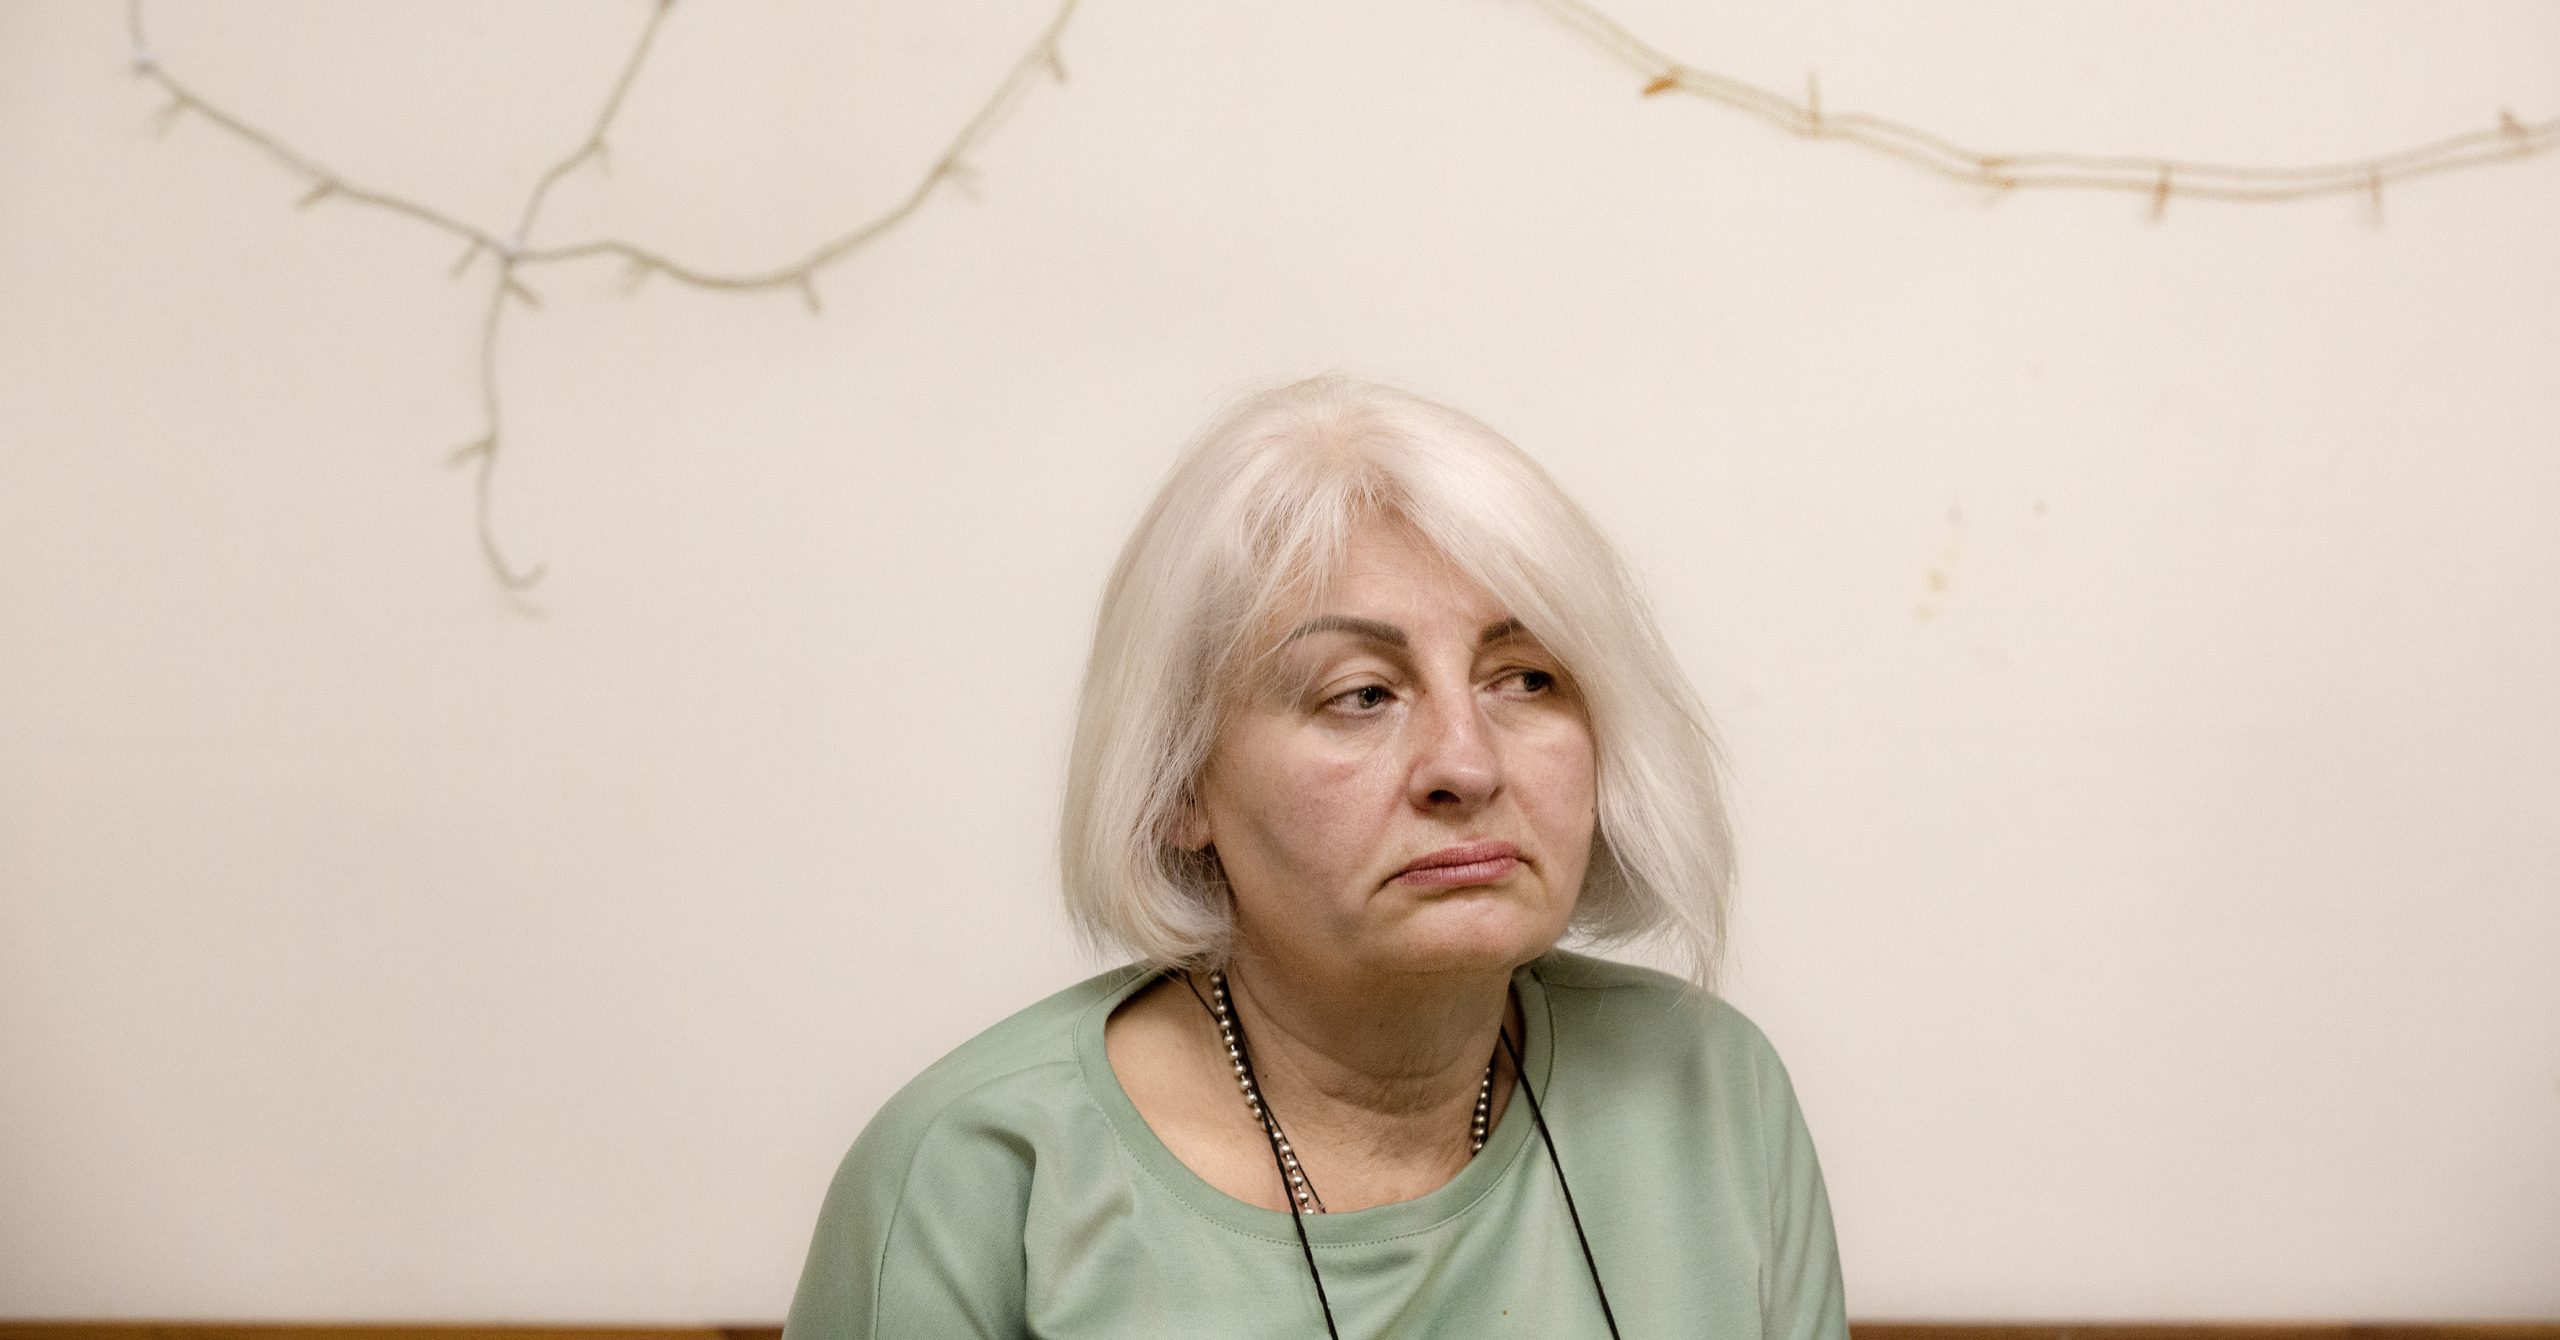 En äldre kvinna med vitt hår och ljusgrön tröja ser ledsen ut